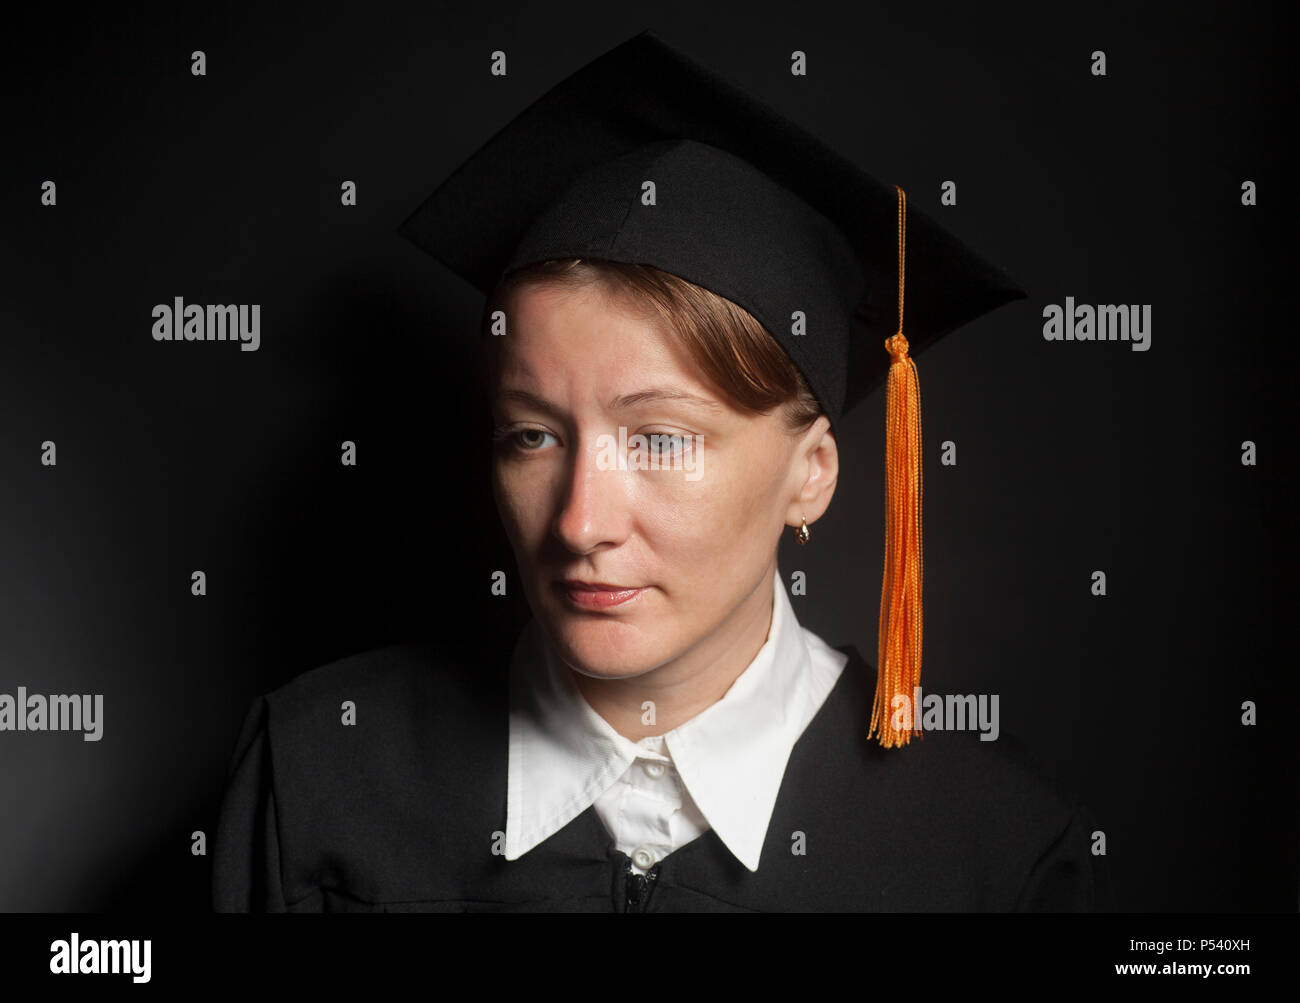 Ritratto di donna bachelor nel mantello nero e il cappuccio di graduazione su sfondo nero Foto Stock